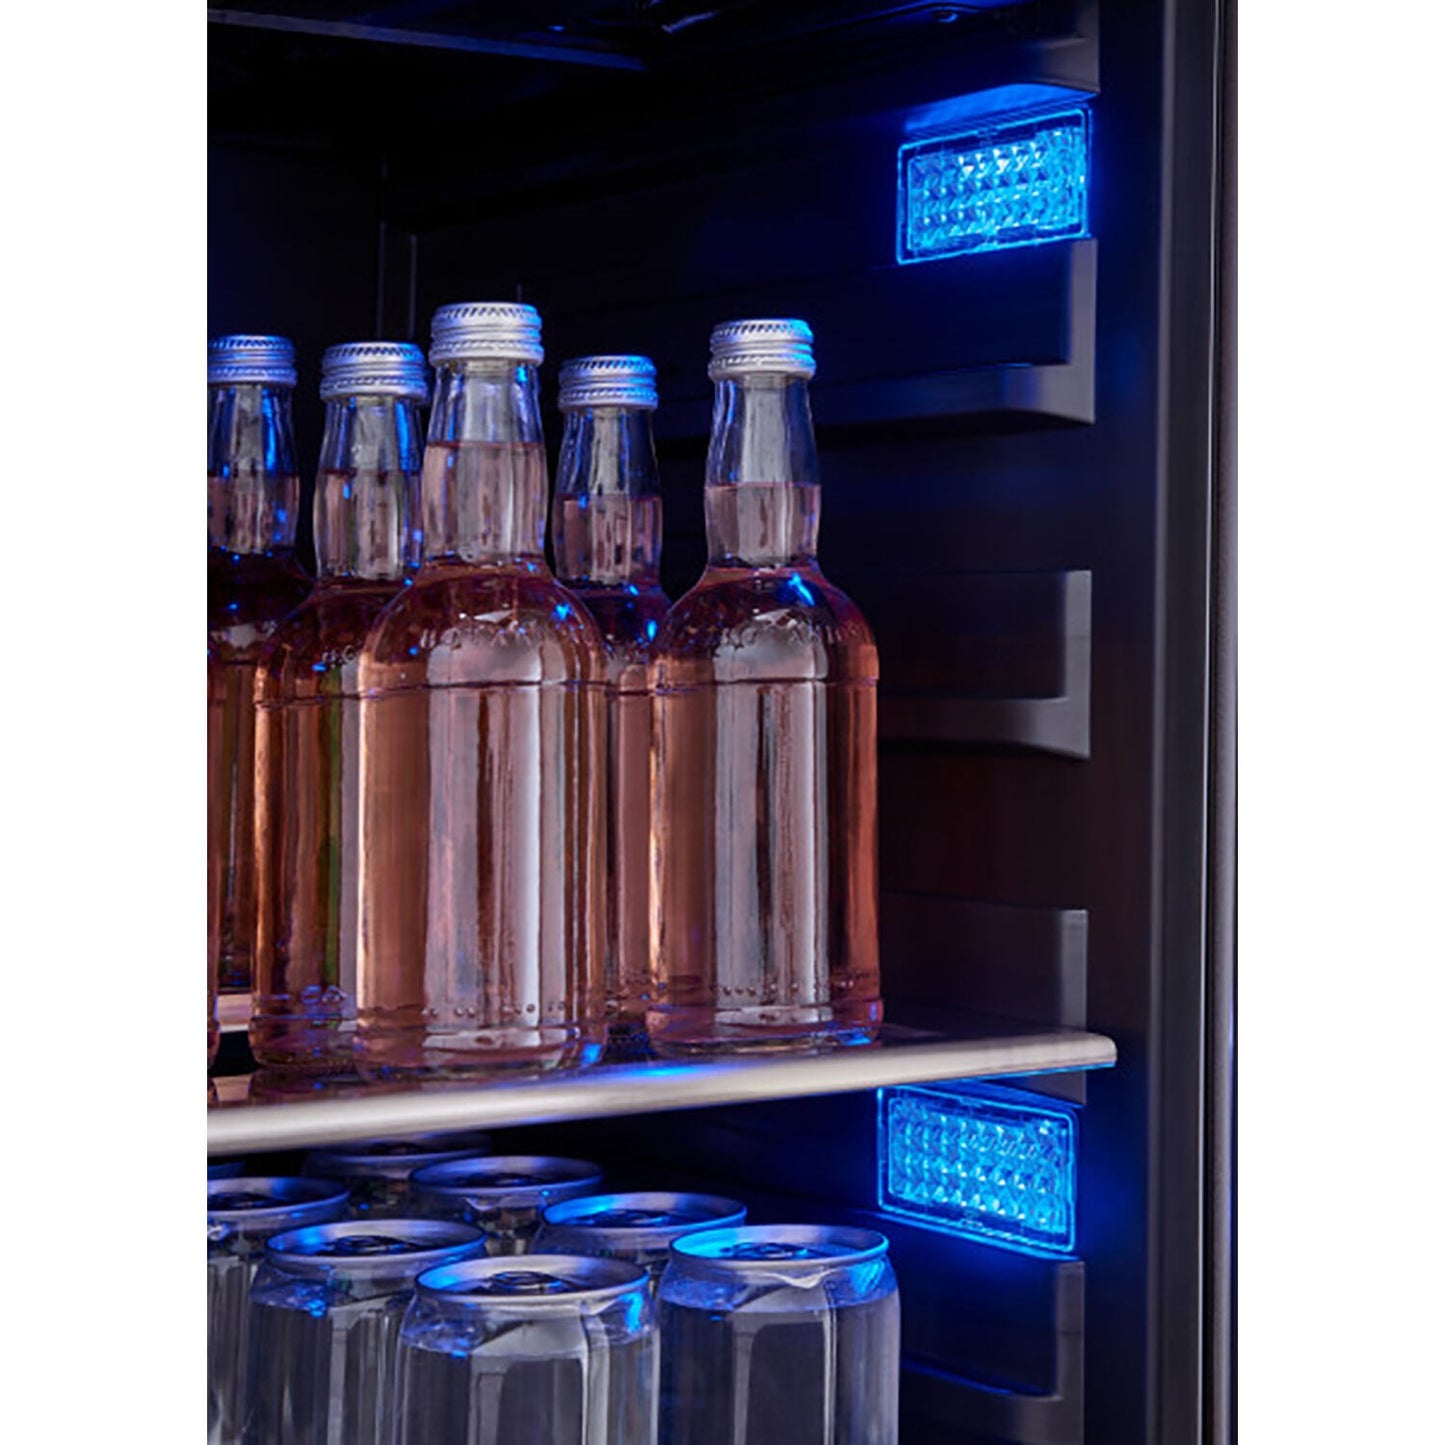 Zephyr Presrv™ 15" Wide, Single Zone Beverage Center- Holds 64 Cans